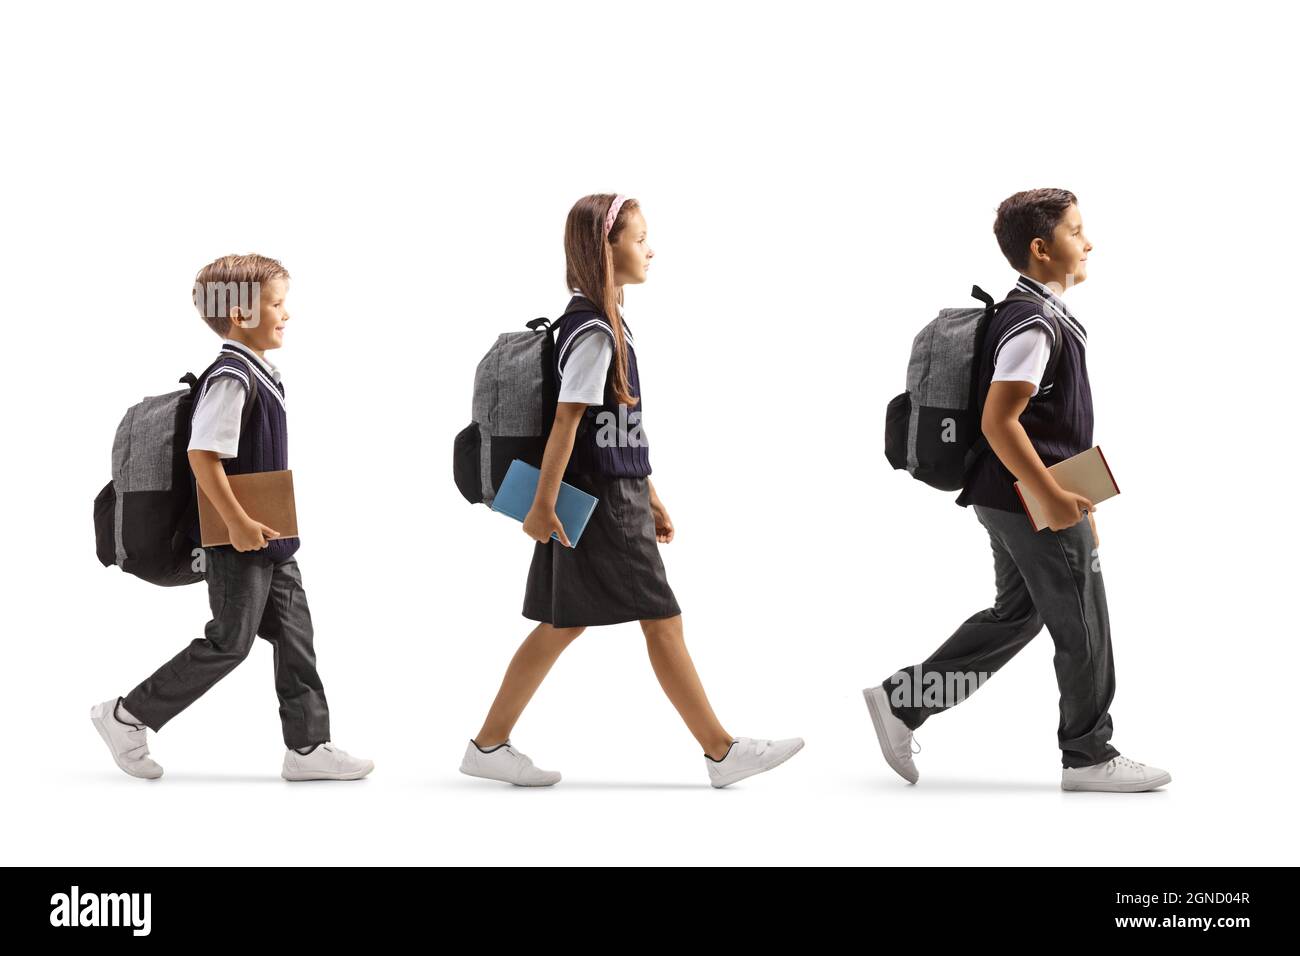 Sparo di profilo completo di una scolgirl e di due scolari che camminano in linea con i libri nelle loro mani isolato su sfondo bianco Foto Stock